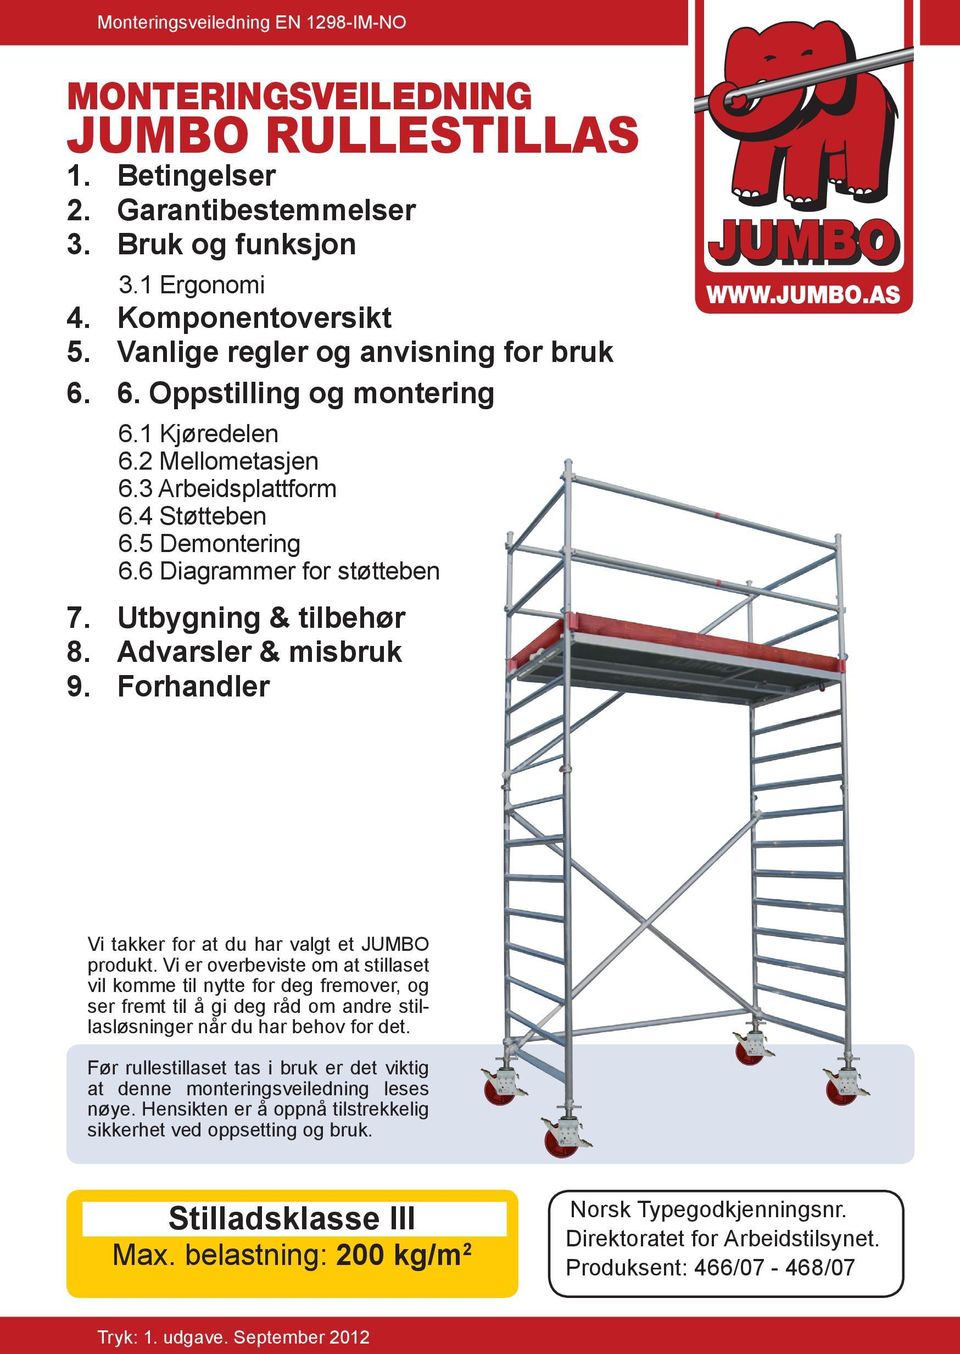 Utbygning & tilbehør 8. Advarsler & misbruk 9. Forhandler JUMBO JUMBO WWW.JUMBO.AS Vi takker for at du har valgt et JUMBO produkt.